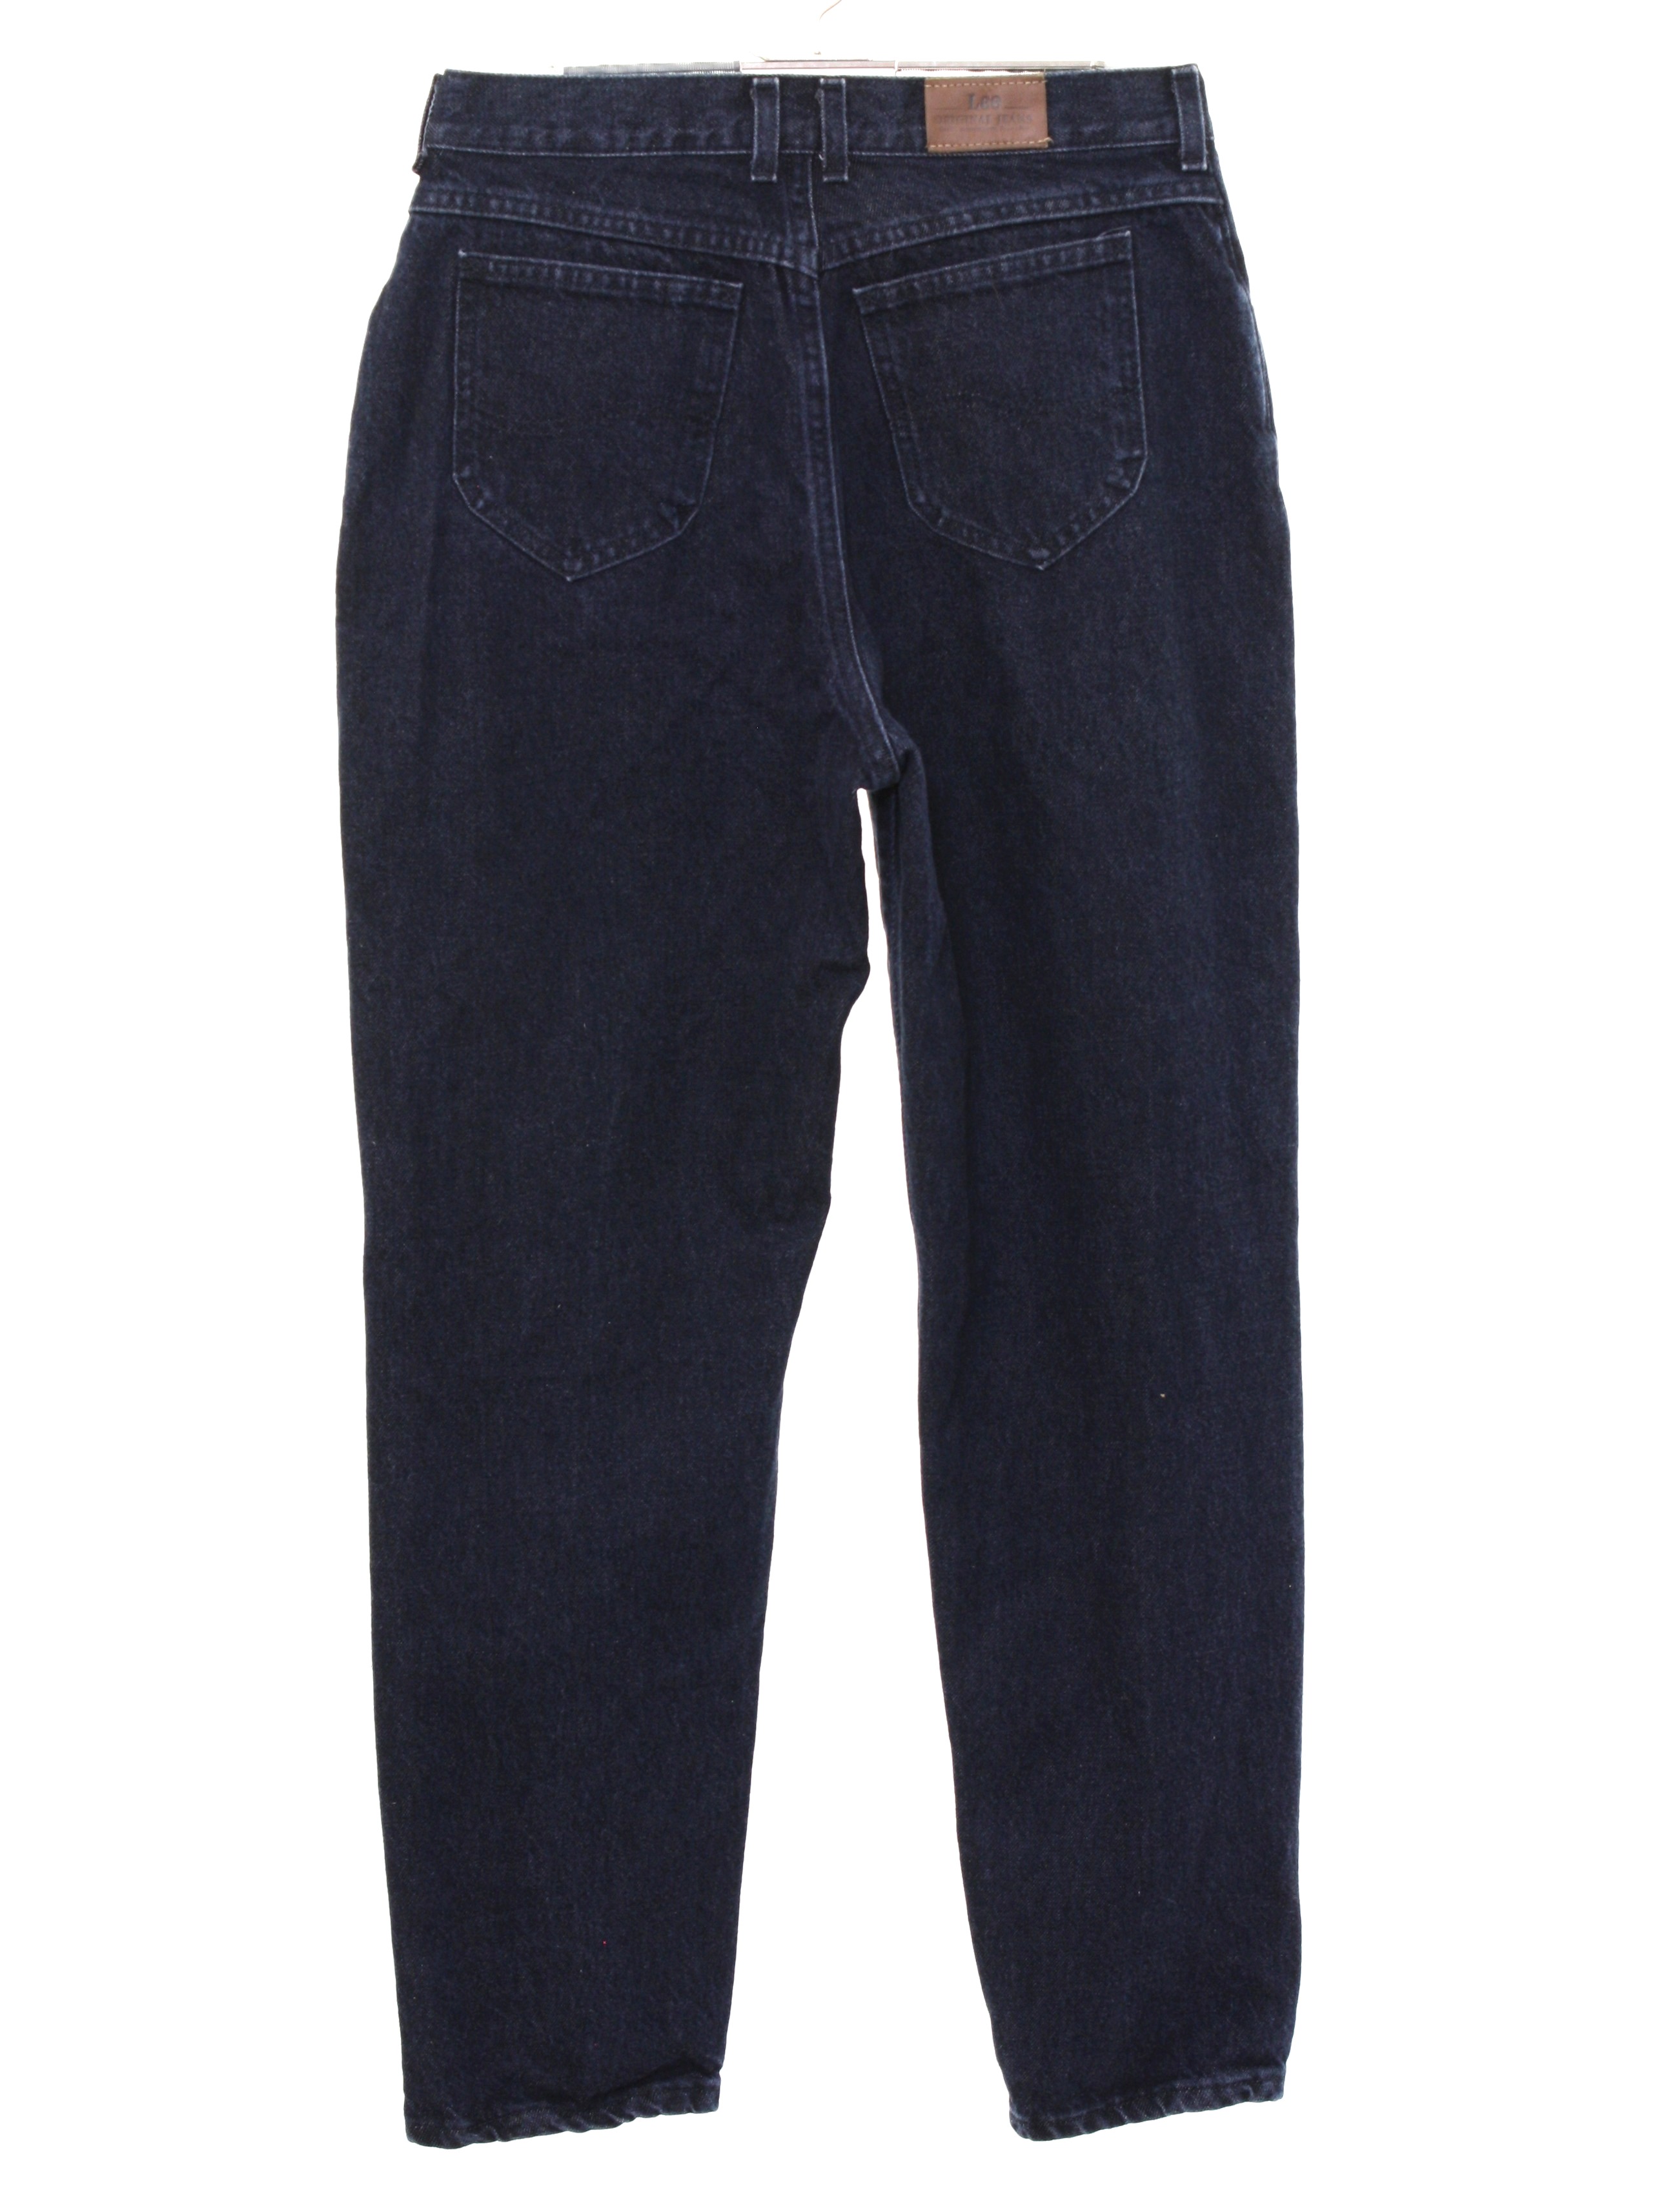 Nineties Vintage Pants: Late 90s -Lee Original Jeans- Womens black ...